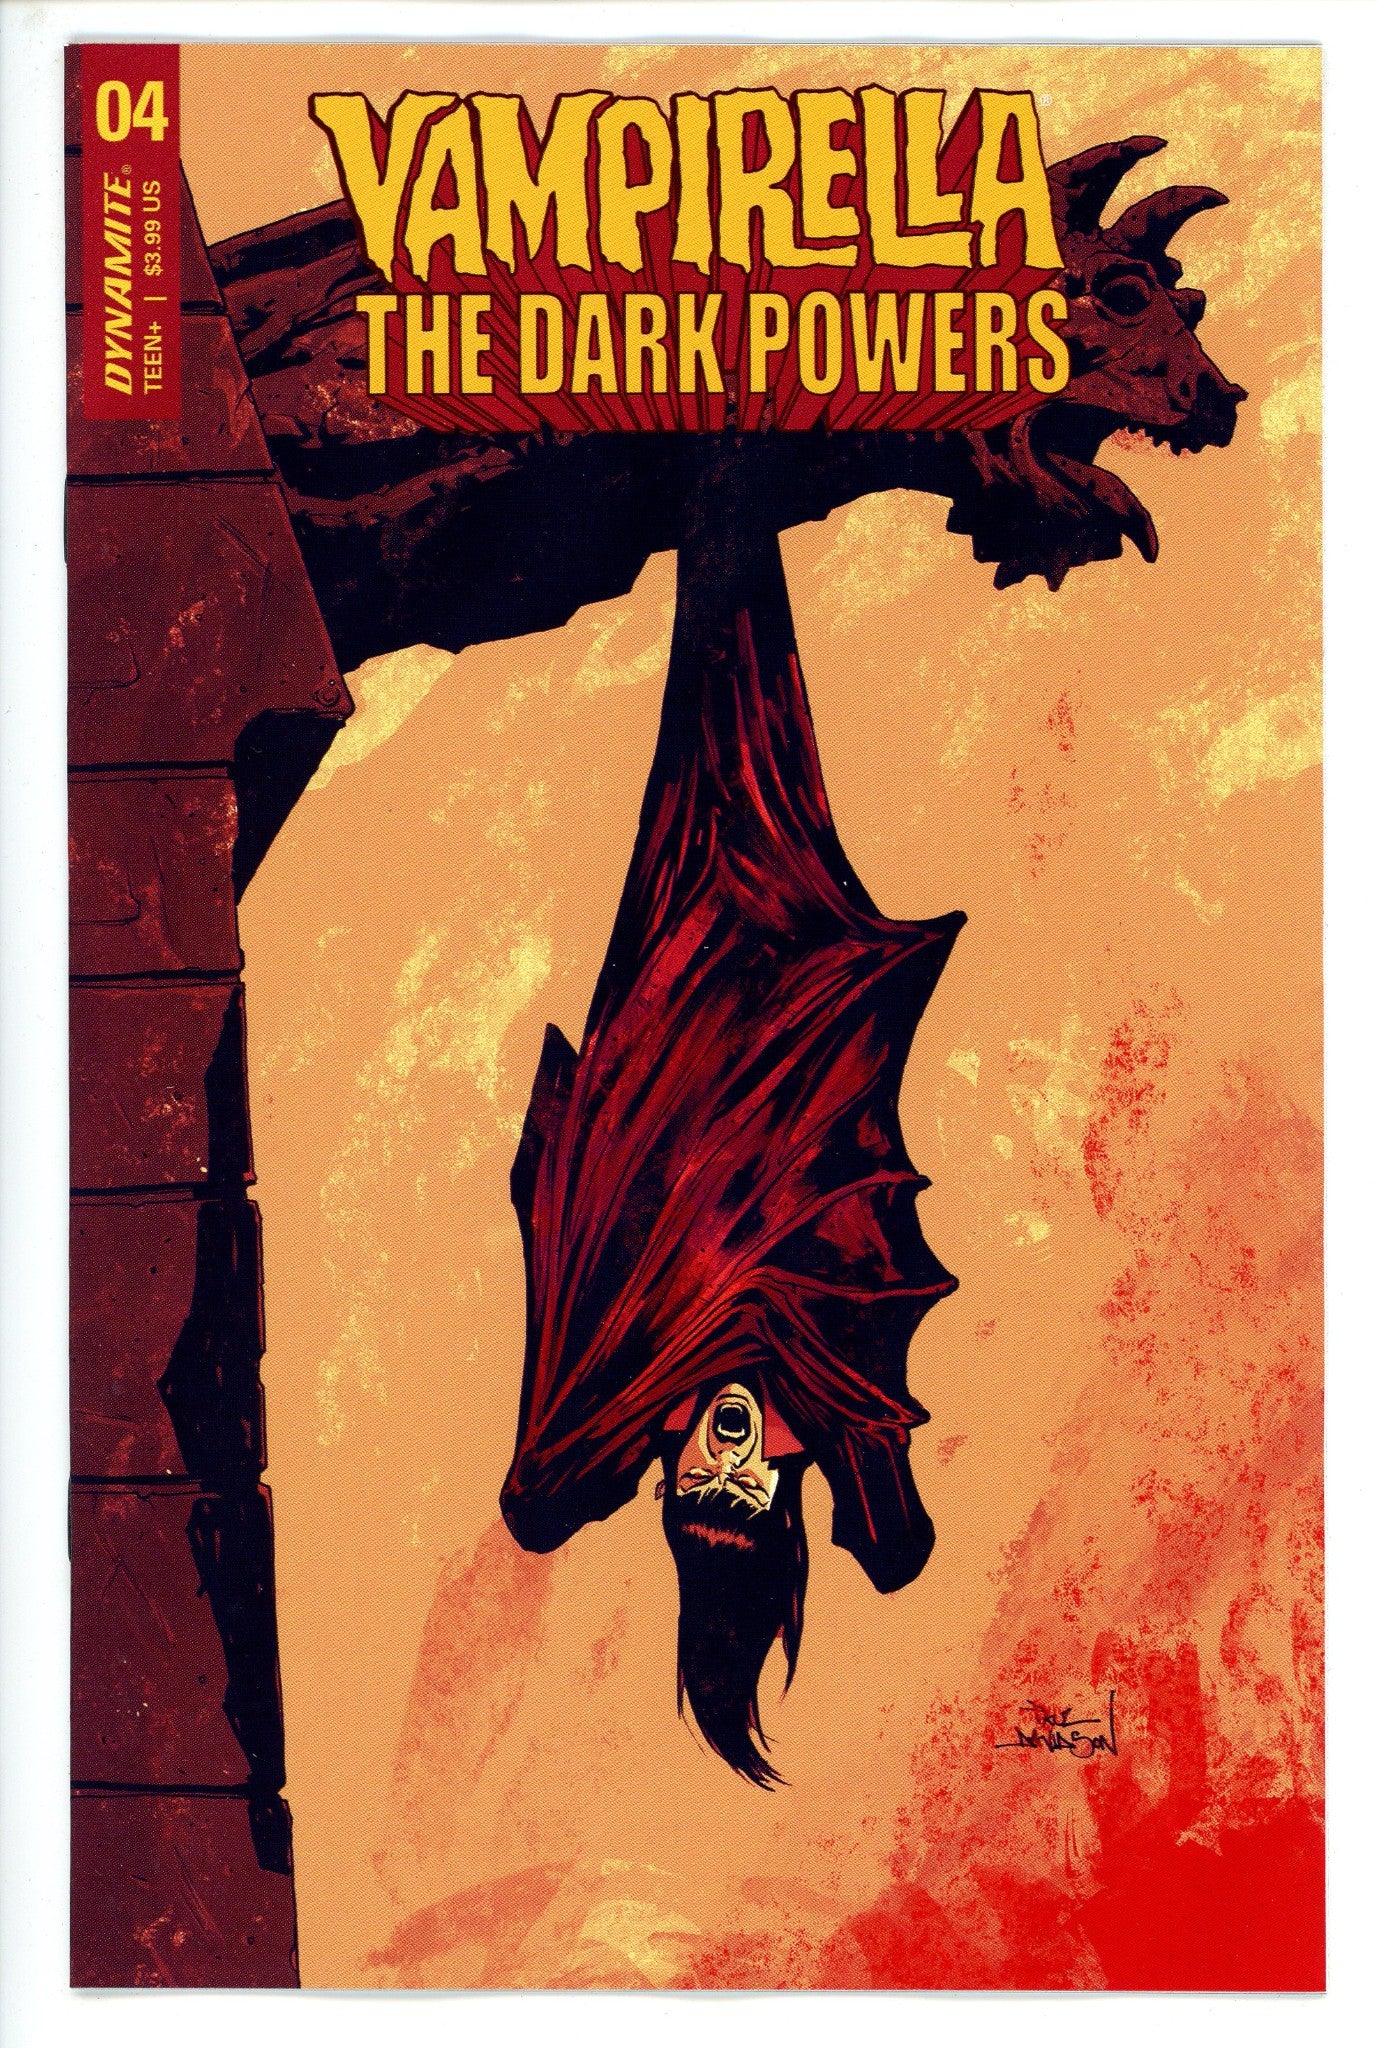 Vampirella Dark Powers 5 Davidson Variant-CaptCan Comics Inc-CaptCan Comics Inc